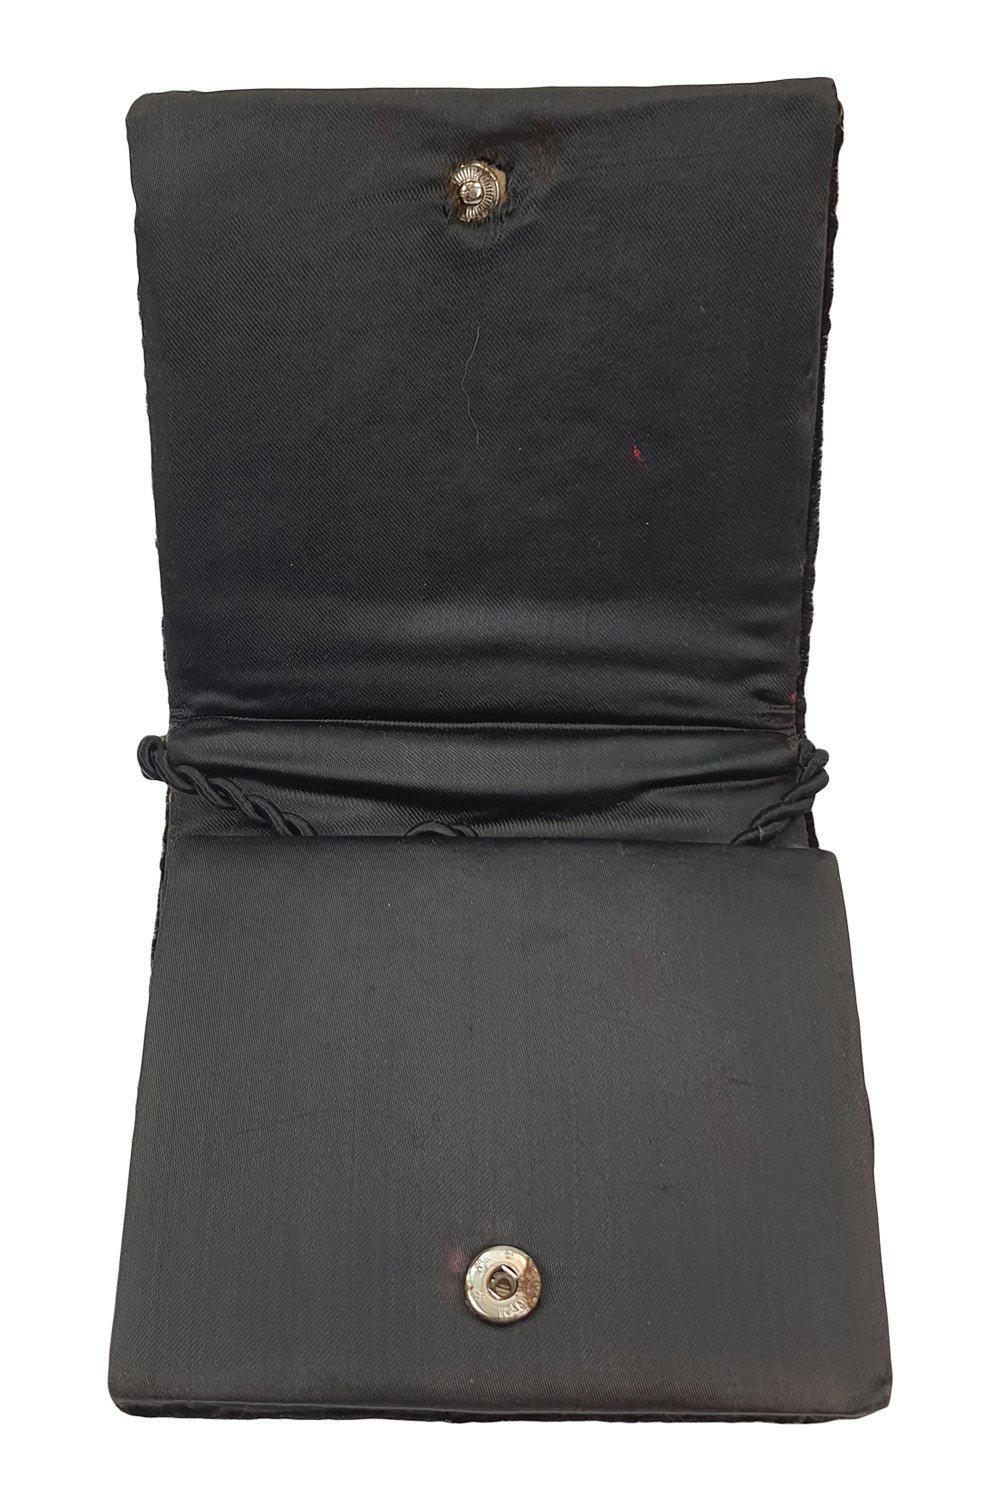 VINTAGE 1950s Small Black Velvet Square Embroidered Crossbody Zardozi Bag (S)-Unbranded-The Freperie